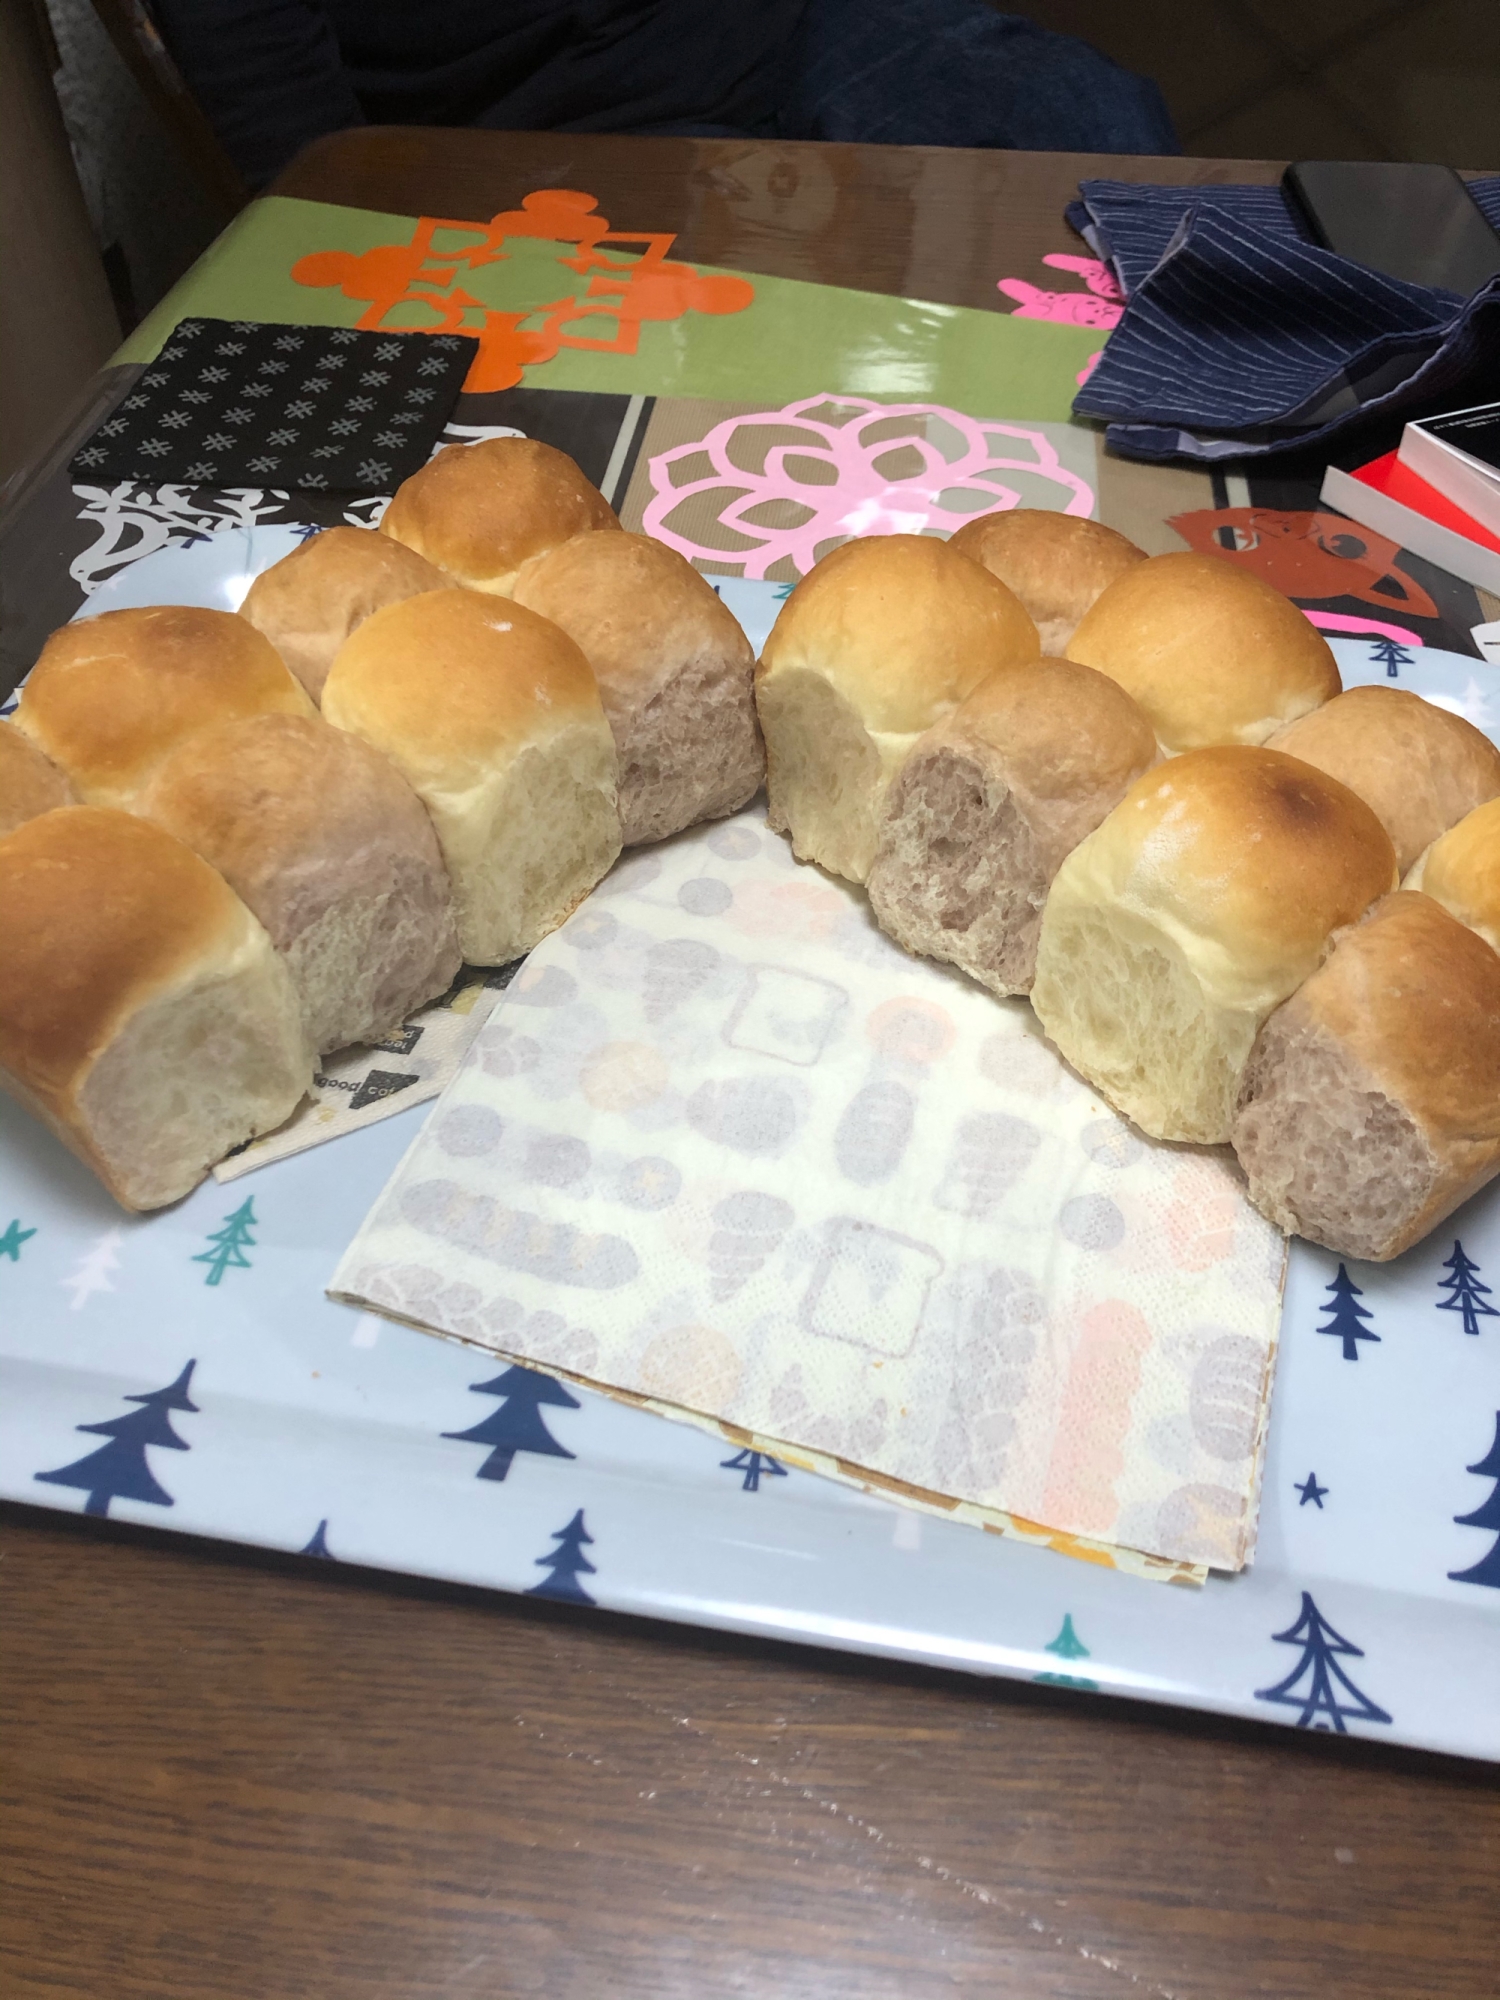 ちぎりパン2色　白パンと紫パン